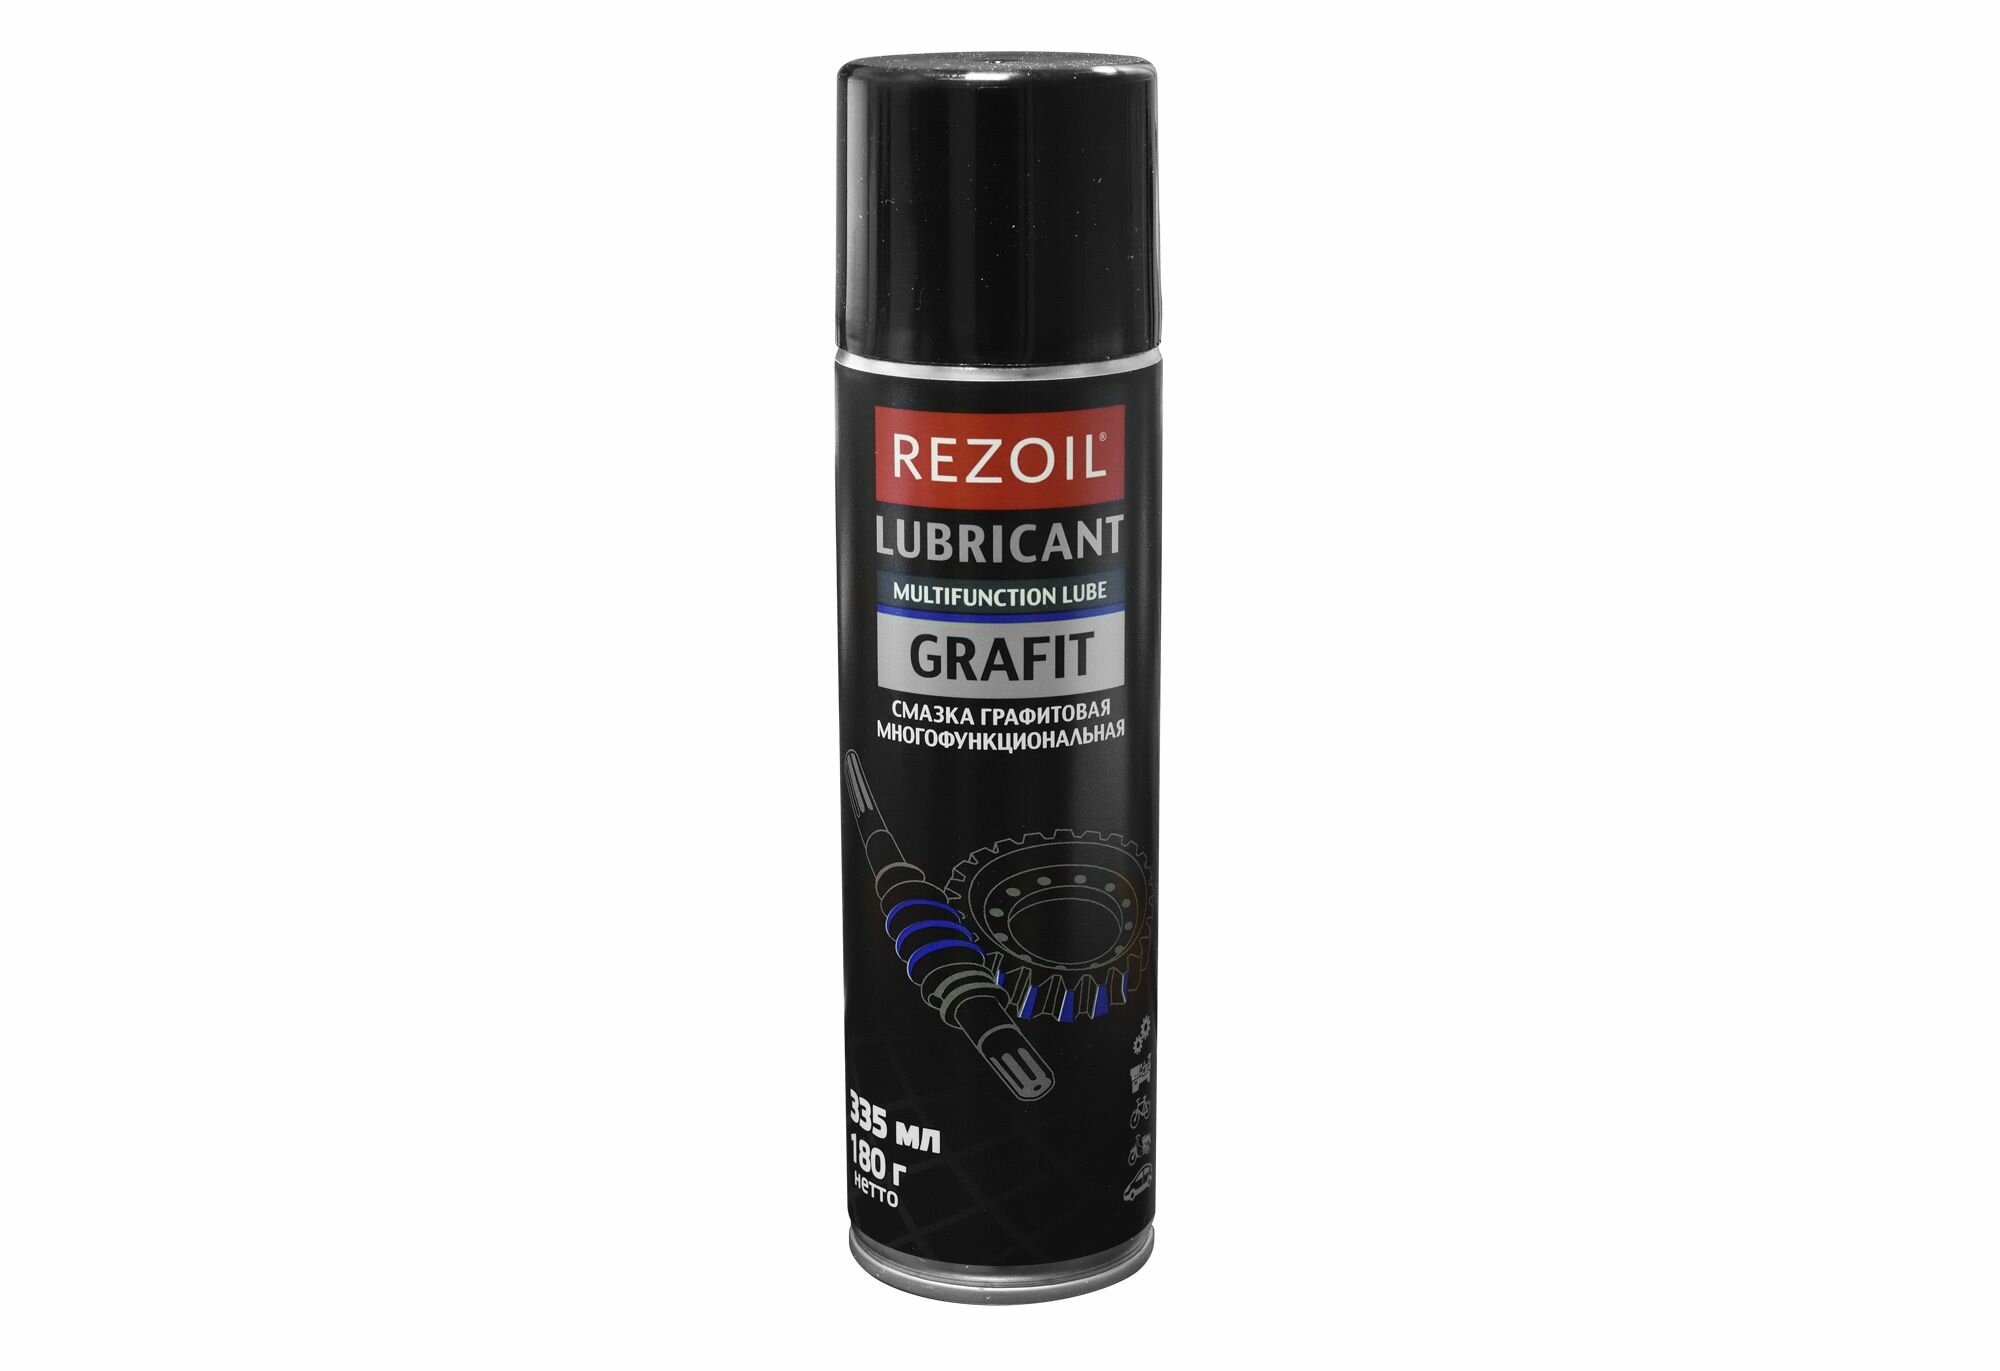 Rezoil графитовая смазка для смазывания узлов трения автомобилей, промышленного оборудования мл/гр 335/180